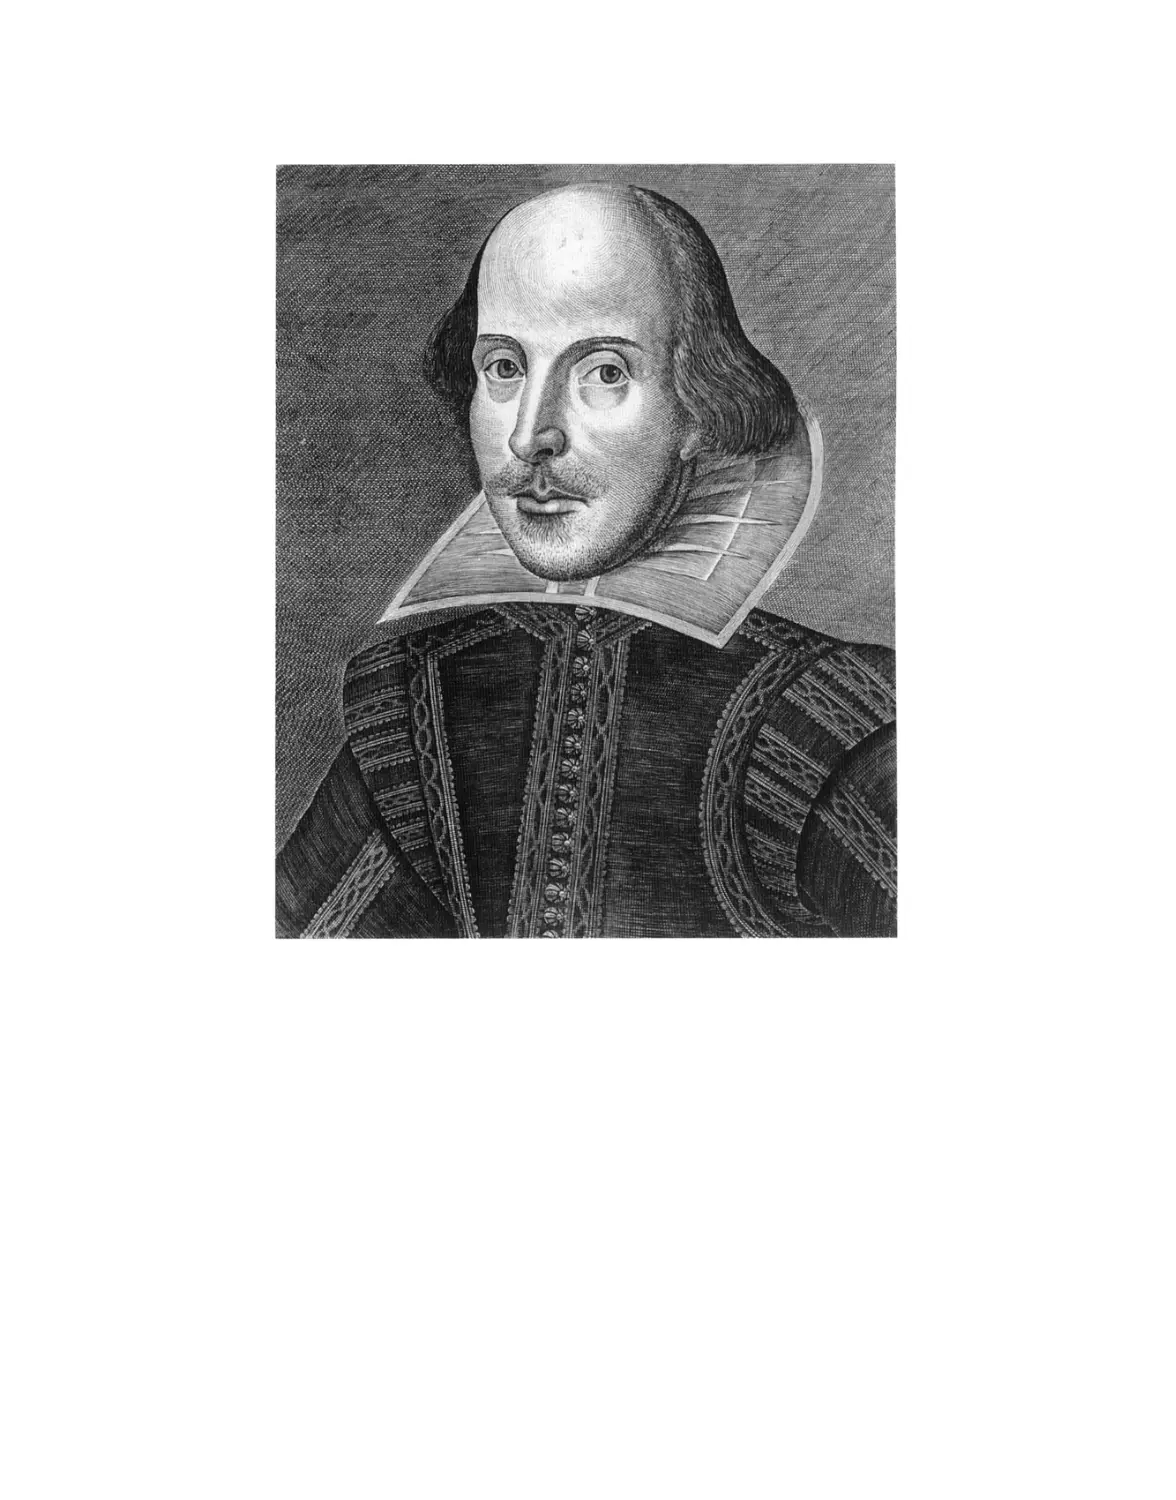 Шекспир Уильям. Сонеты - 2016
Вклейка. Уильям Шекспир. 1623